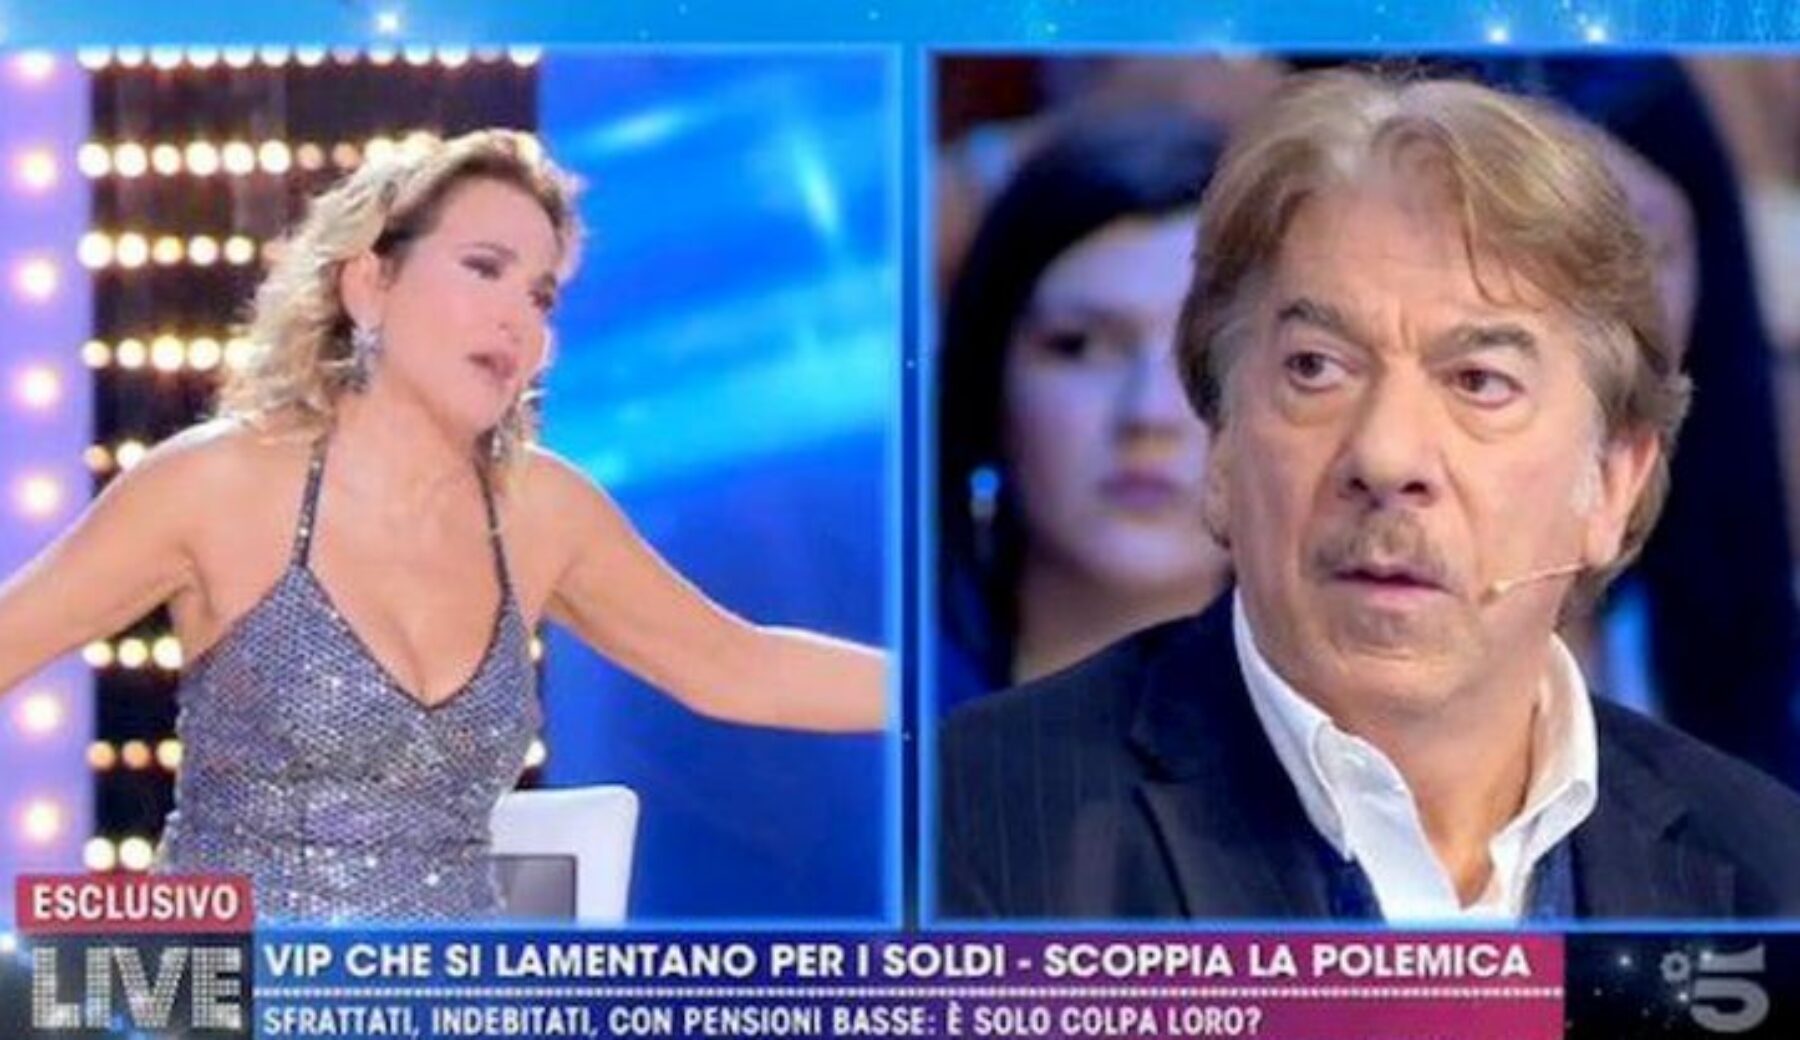 Marco Columbro contro Barbara d’Urso: i retroscena della lite in tv